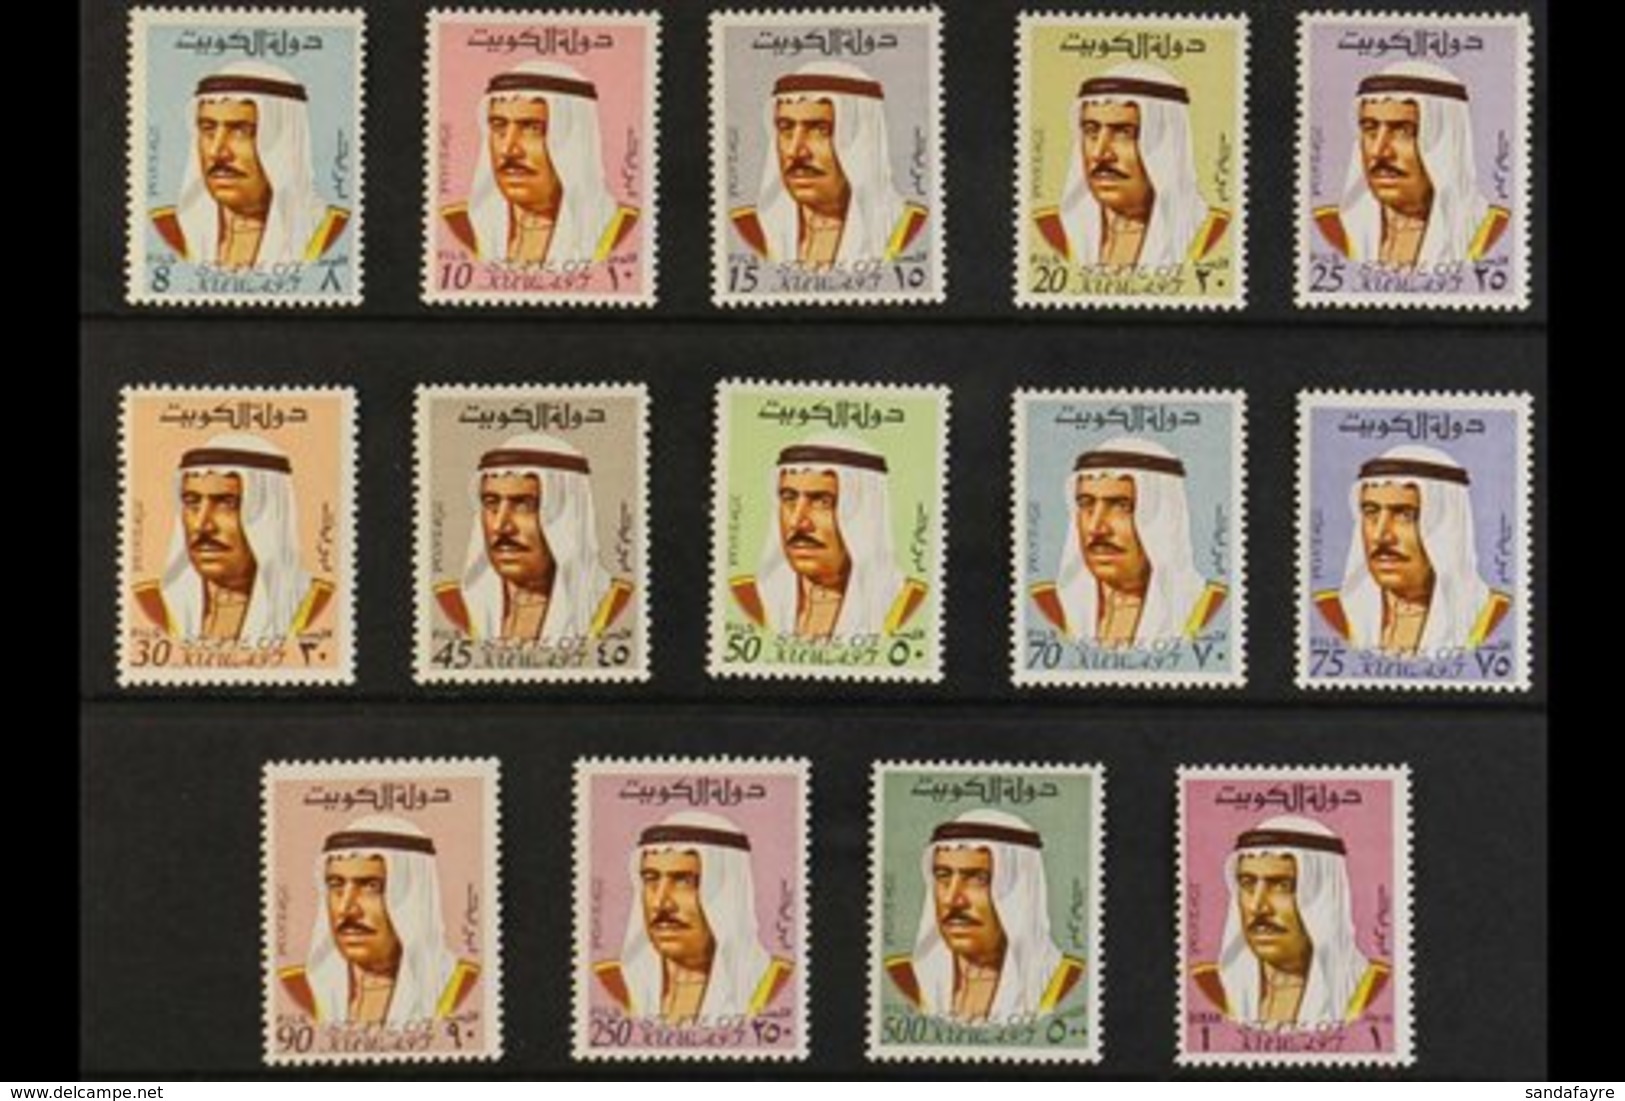 1969-74 Amir Sheikh Sabah Complete Set, SG 457/70, Fine Never Hinged Mint, Fresh. (14 Stamps) For More Images, Please Vi - Koweït